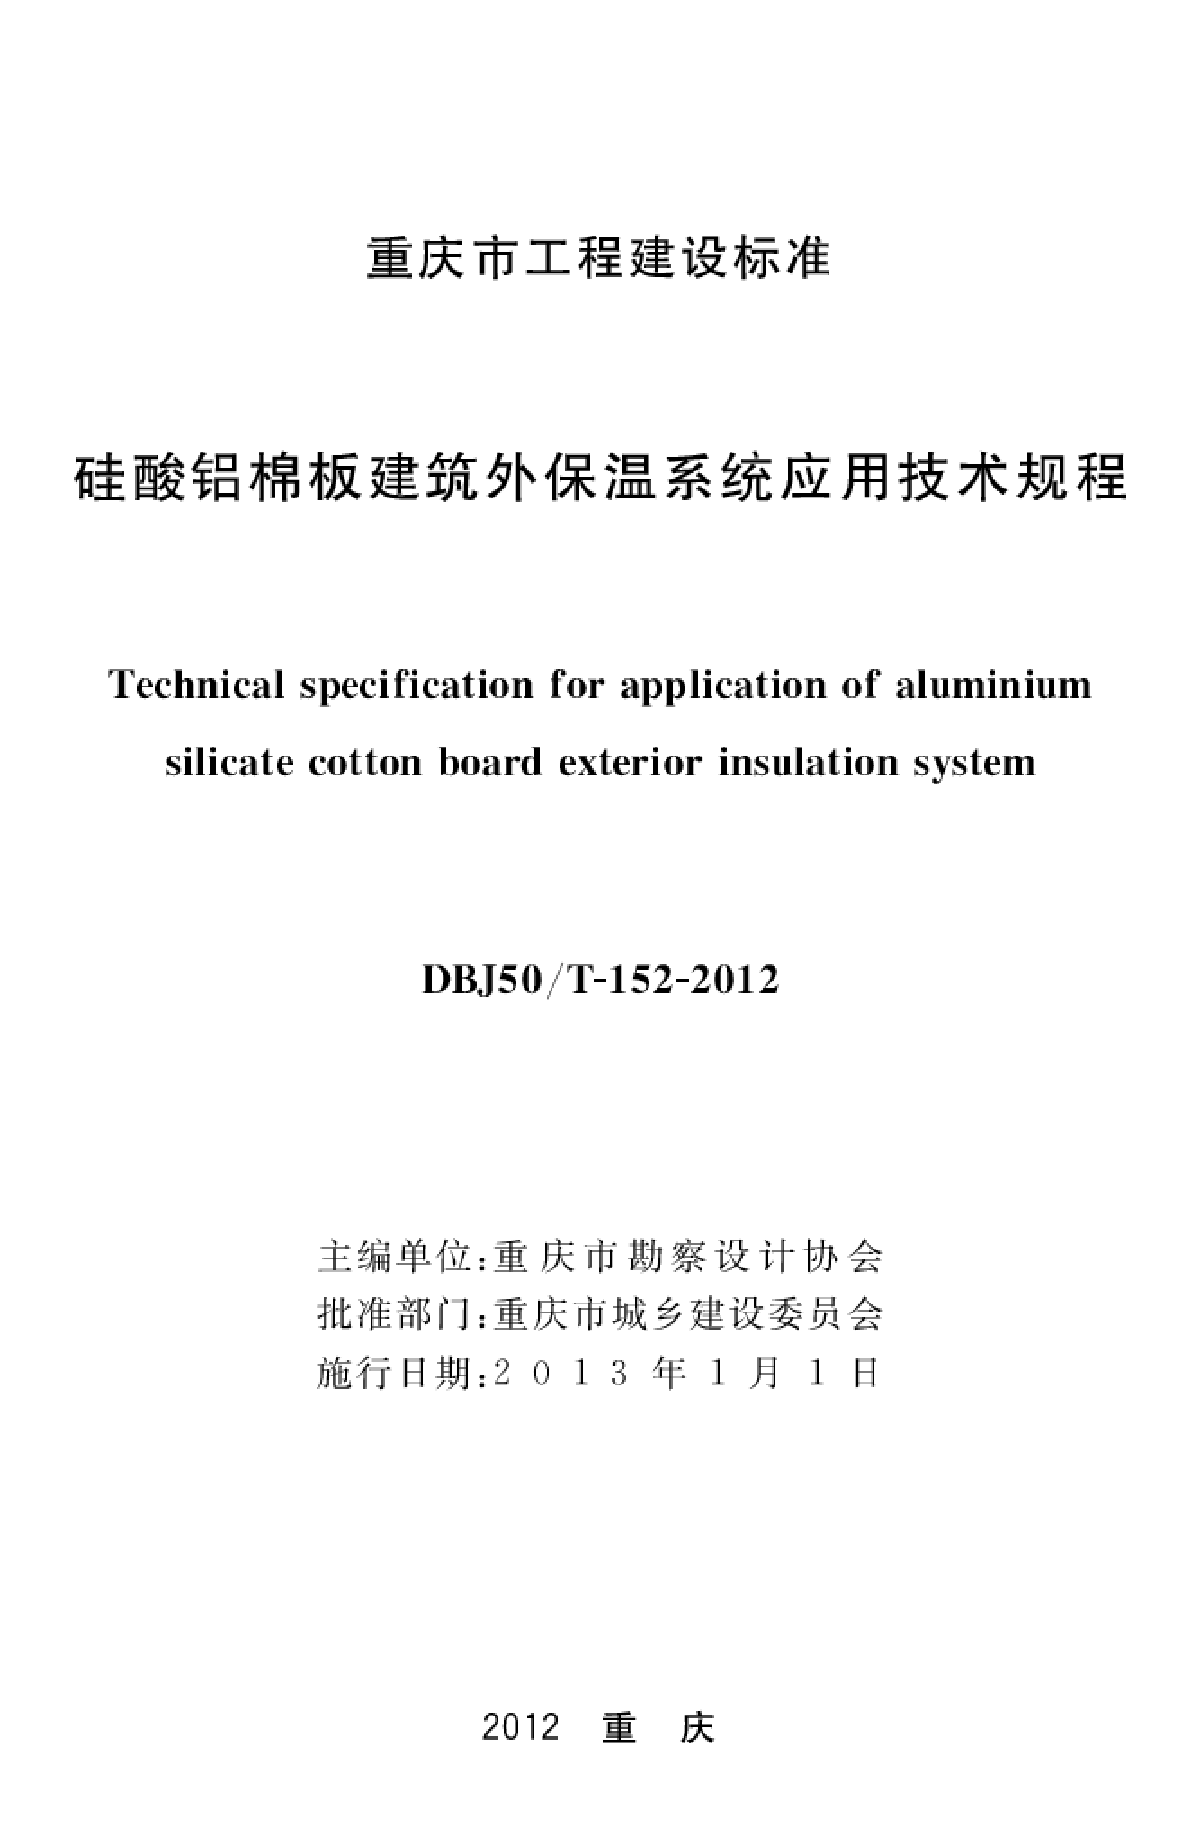 DBJ50／T-152-2012_硅酸铝棉板建筑外保温系统应用技术规程-图二